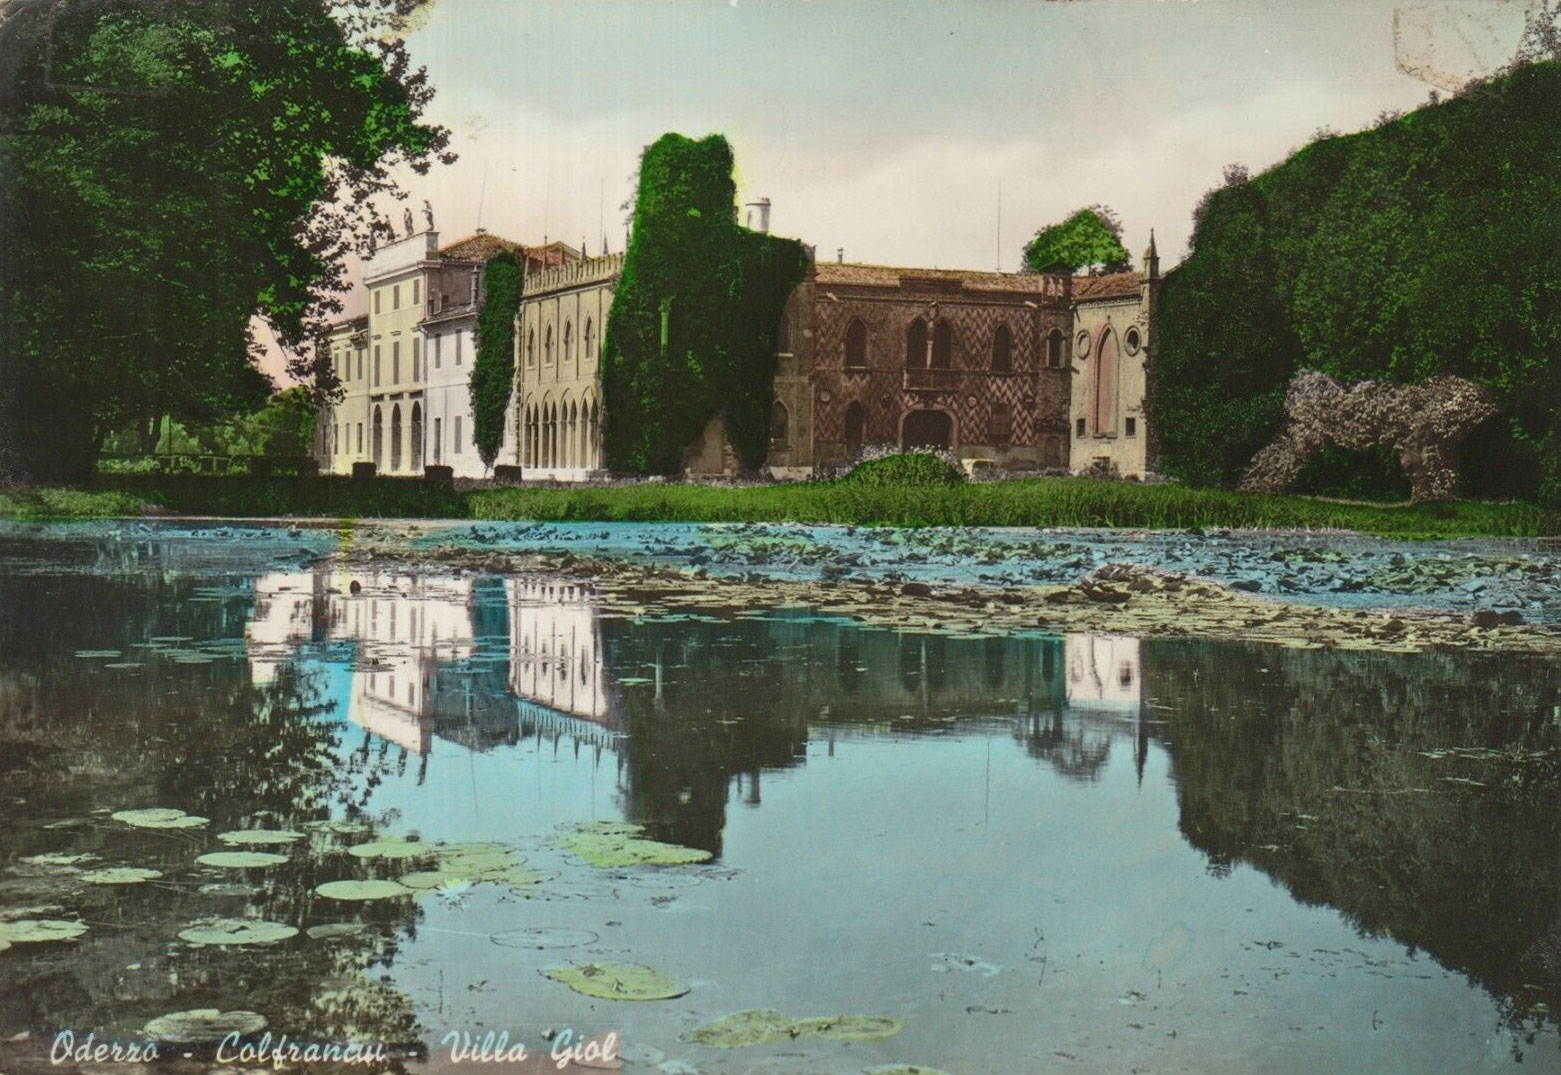 1952-Oderzo-Colfrancui-Villa-Giol